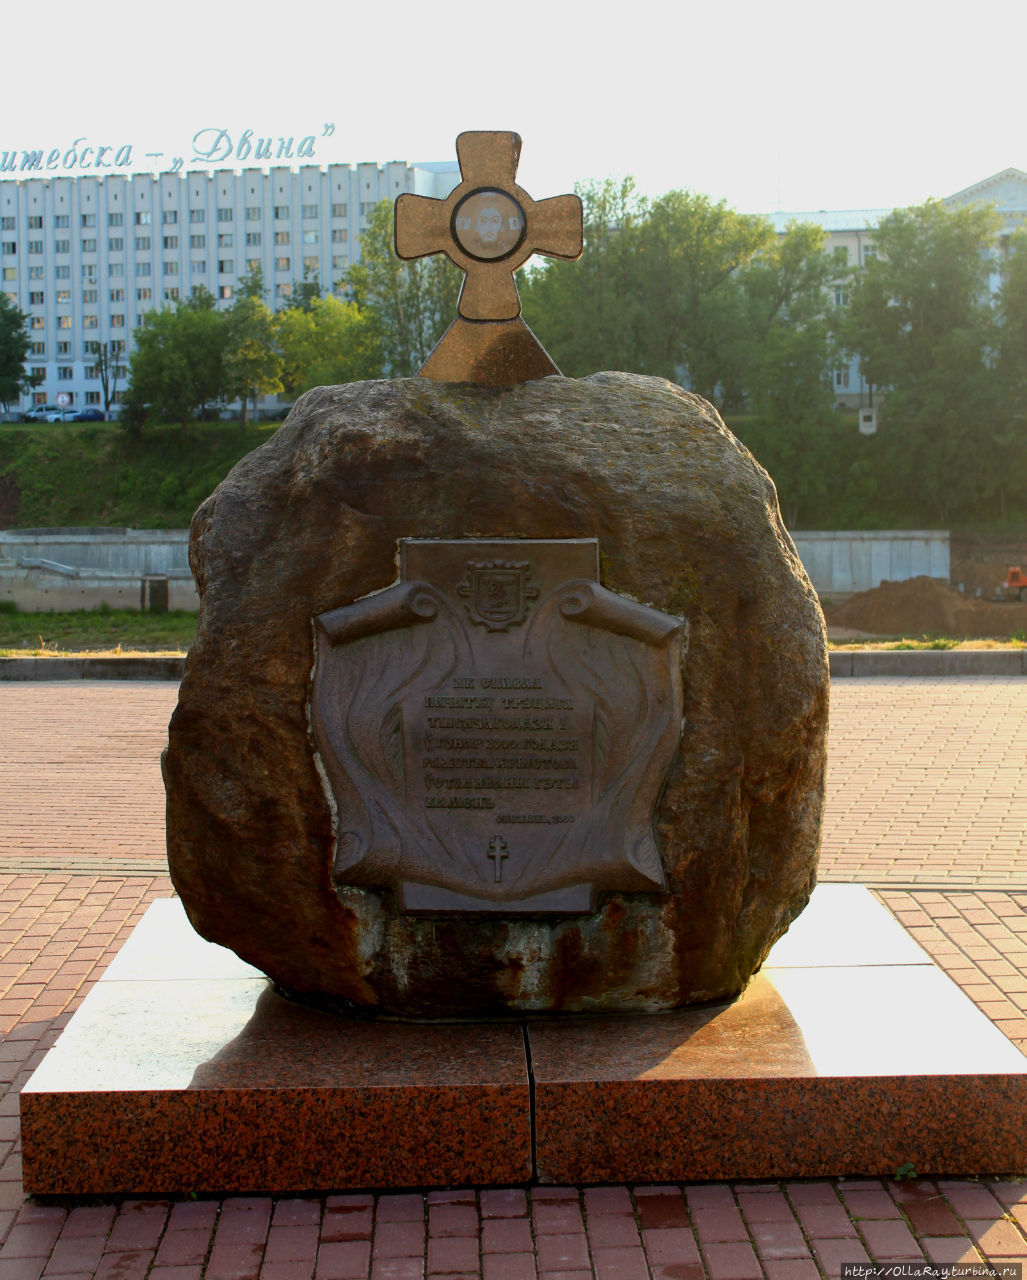 А на другой стороне Витьбы на площади 1000-летия Витебска стоит памятный знак, знаменующий начало третьего тысячелетия. Витебск, Беларусь